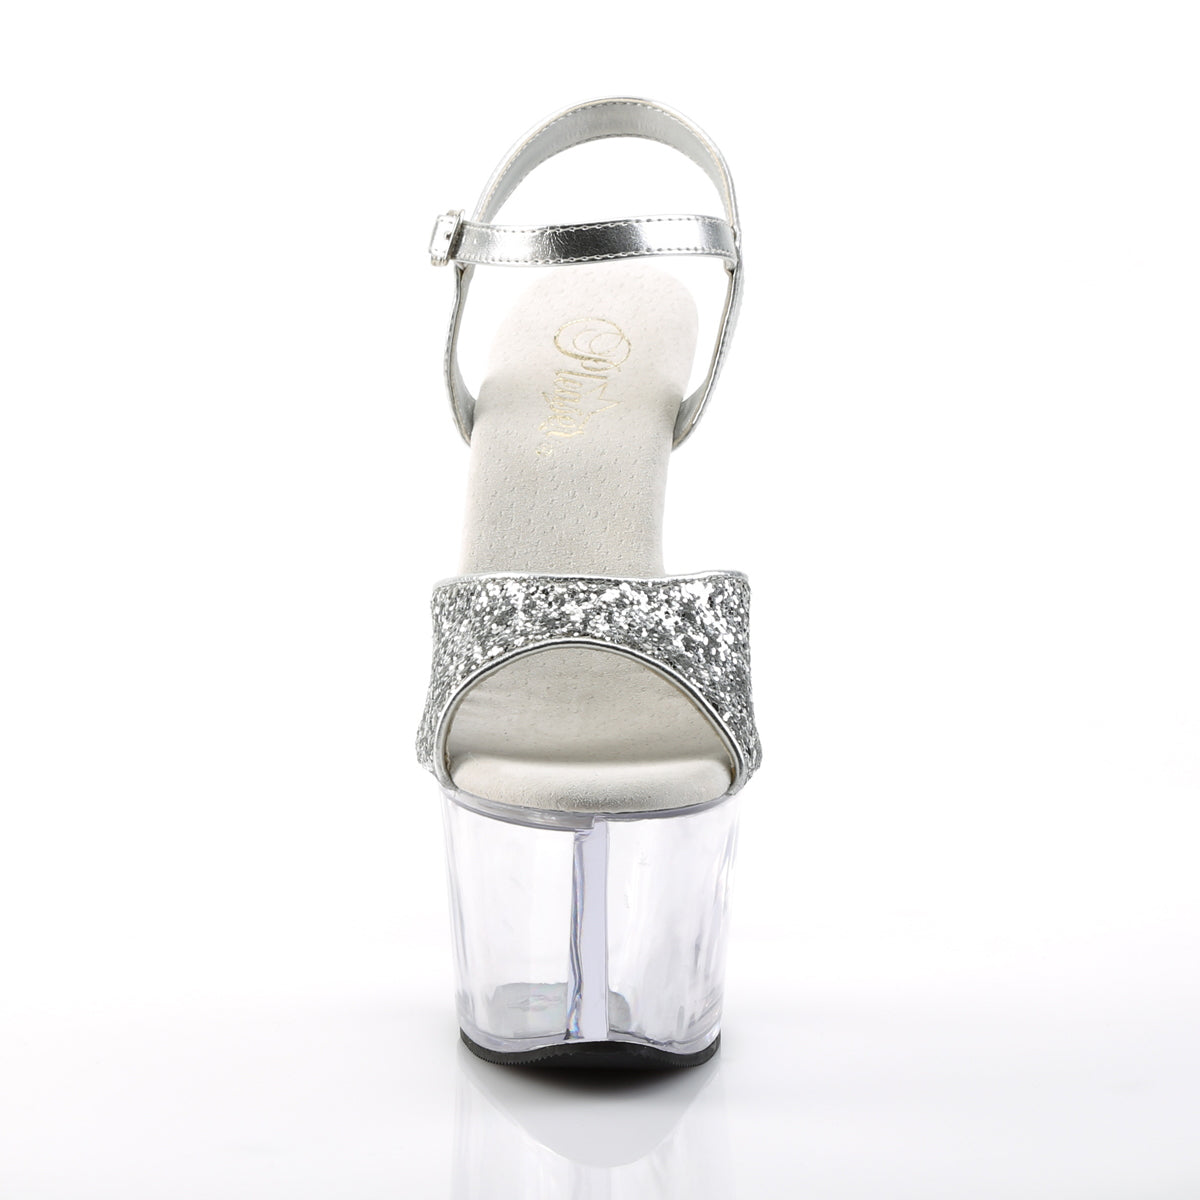 SKY-310 Pleaser 7" Heel Silver Glitter Pole Dancing Platform-Pleaser- Sexy Shoes Alternative Footwear